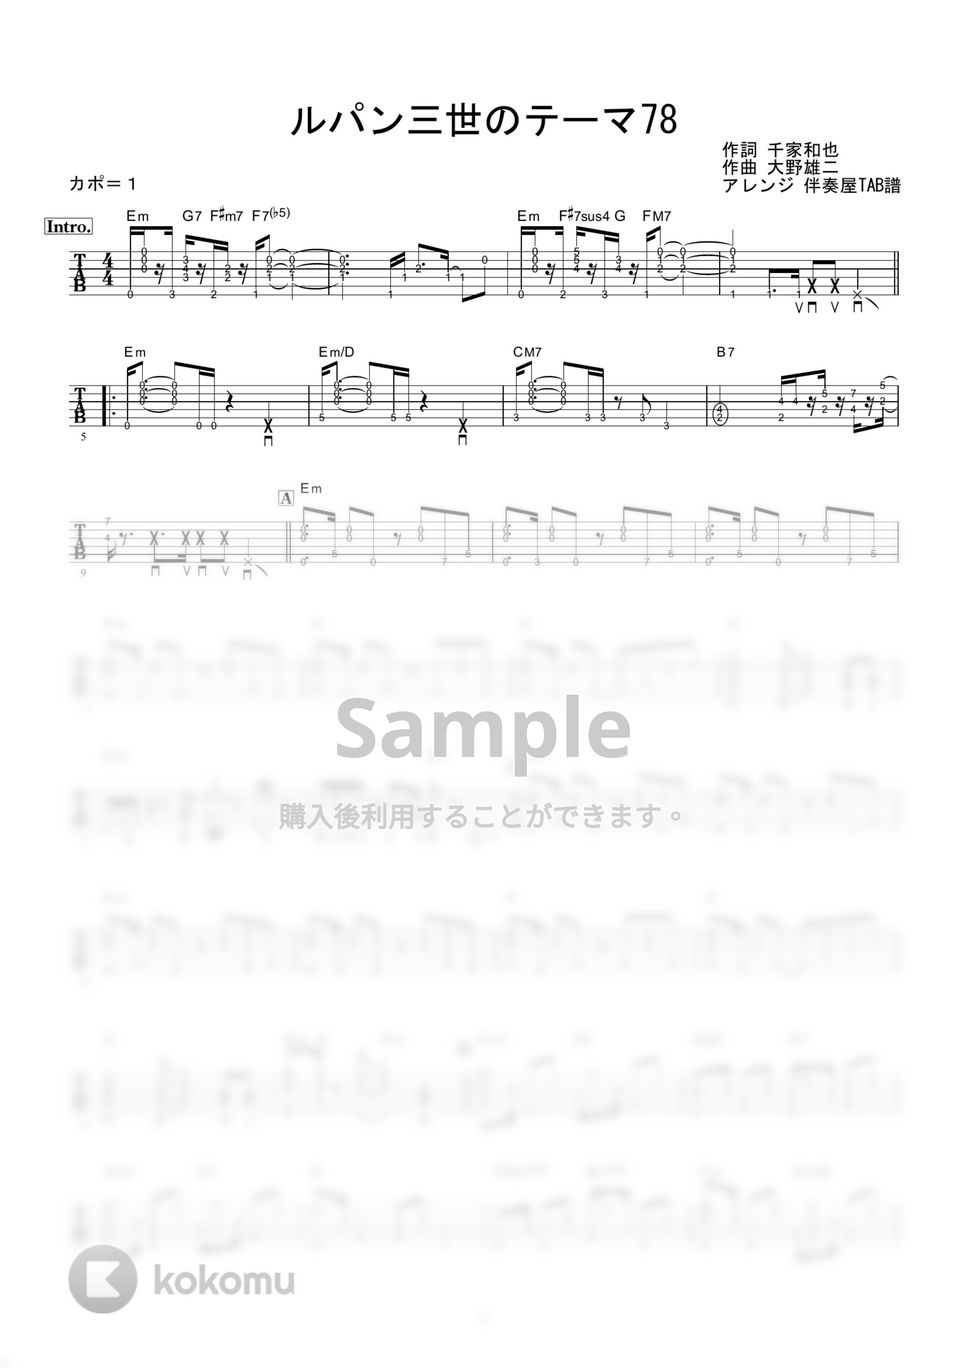 ピートマック・ジュニア / 大野雄二 - ルパン三世のテーマ '78 (ギター伴奏 / イントロ・間奏ソロギター) by 伴奏屋TAB譜